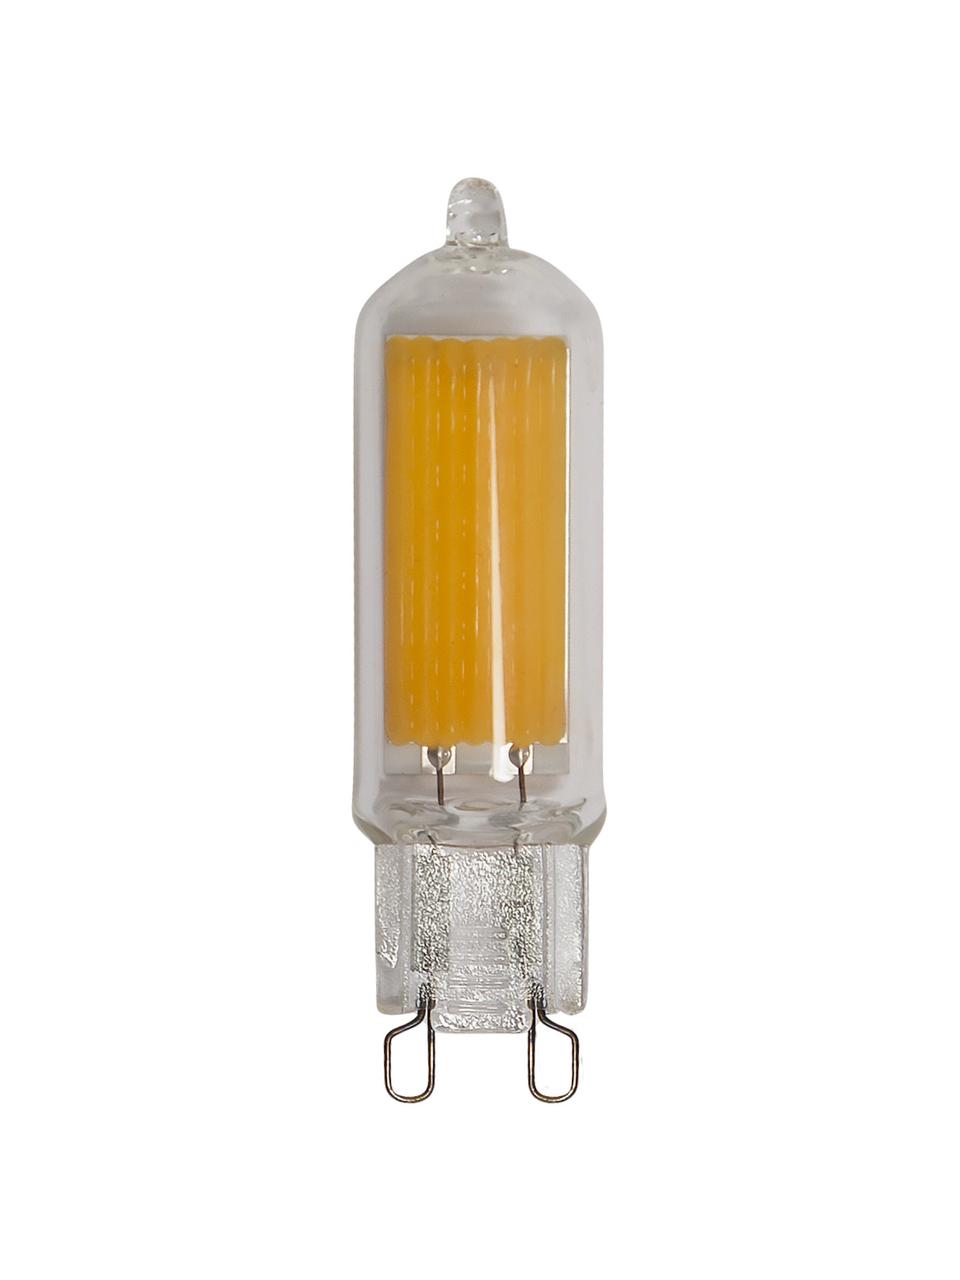 G9 Leuchtmittel, 3W, warmweiß, 4 Stück, Leuchtmittelschirm: Glas, Leuchtmittelfassung: Aluminium, Transparent, Ø 1 x H 6 cm